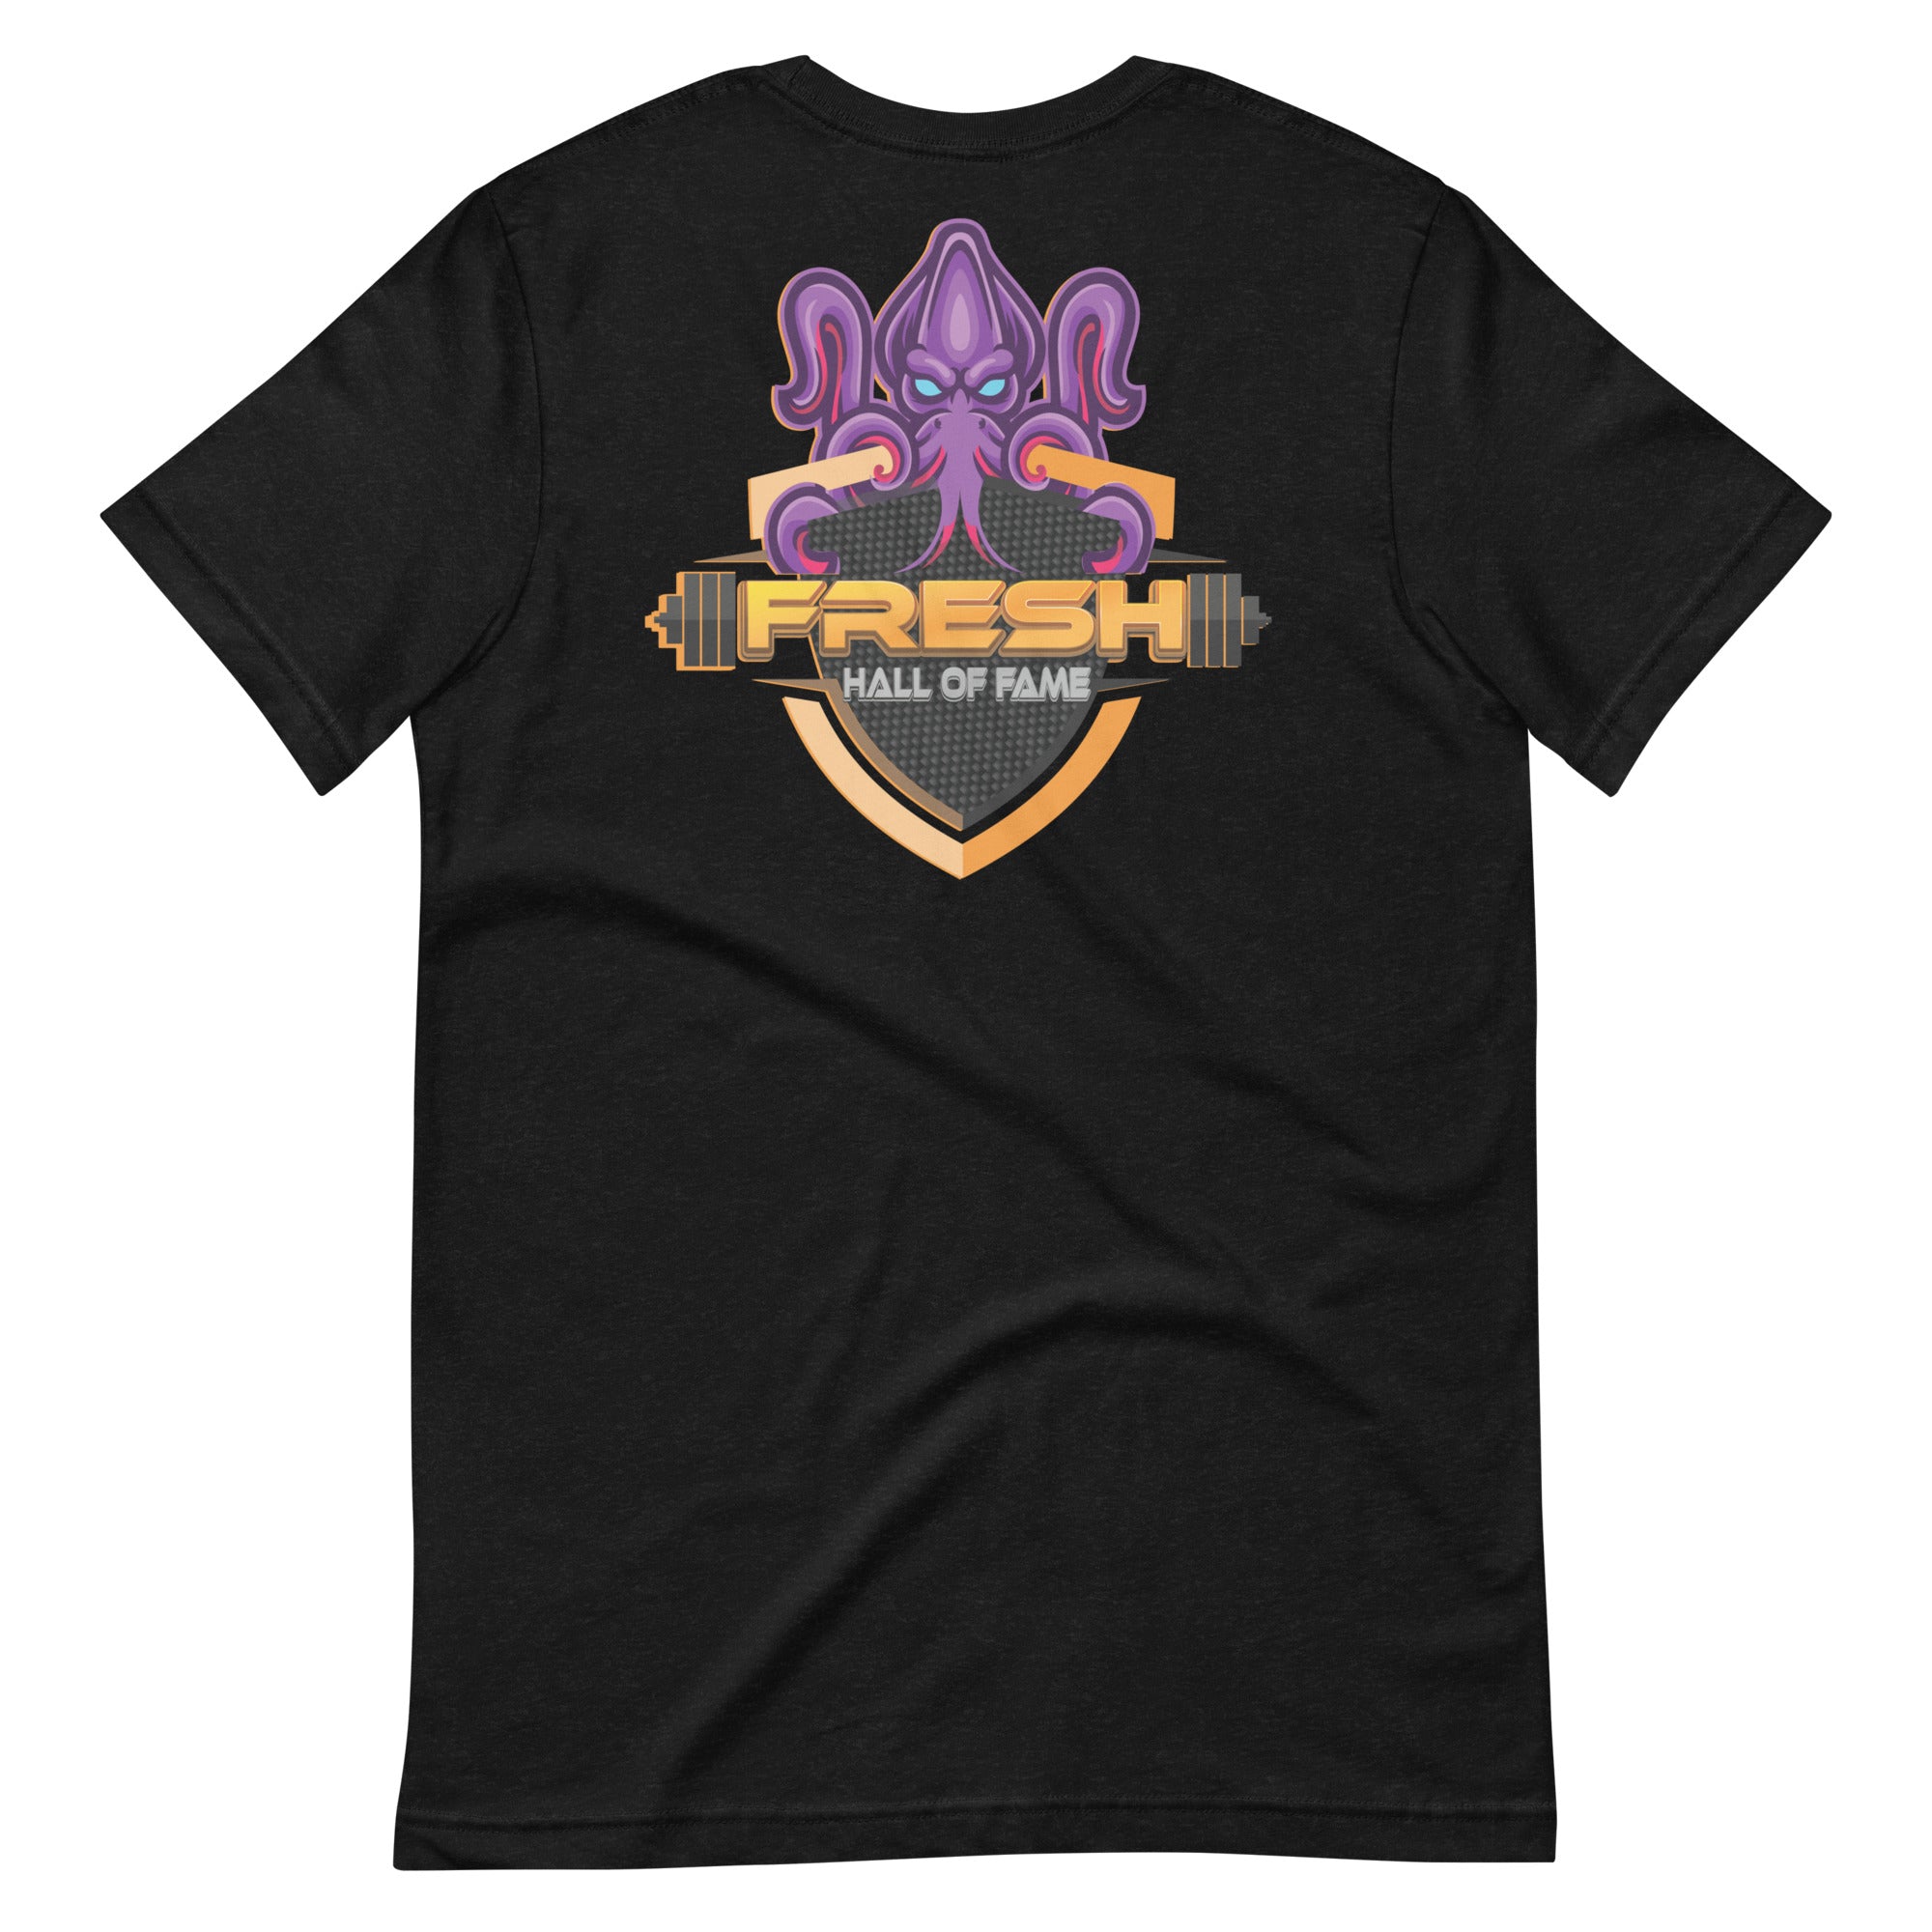 Fresh Level Up: Hall of Fame | Unisex t-shirt